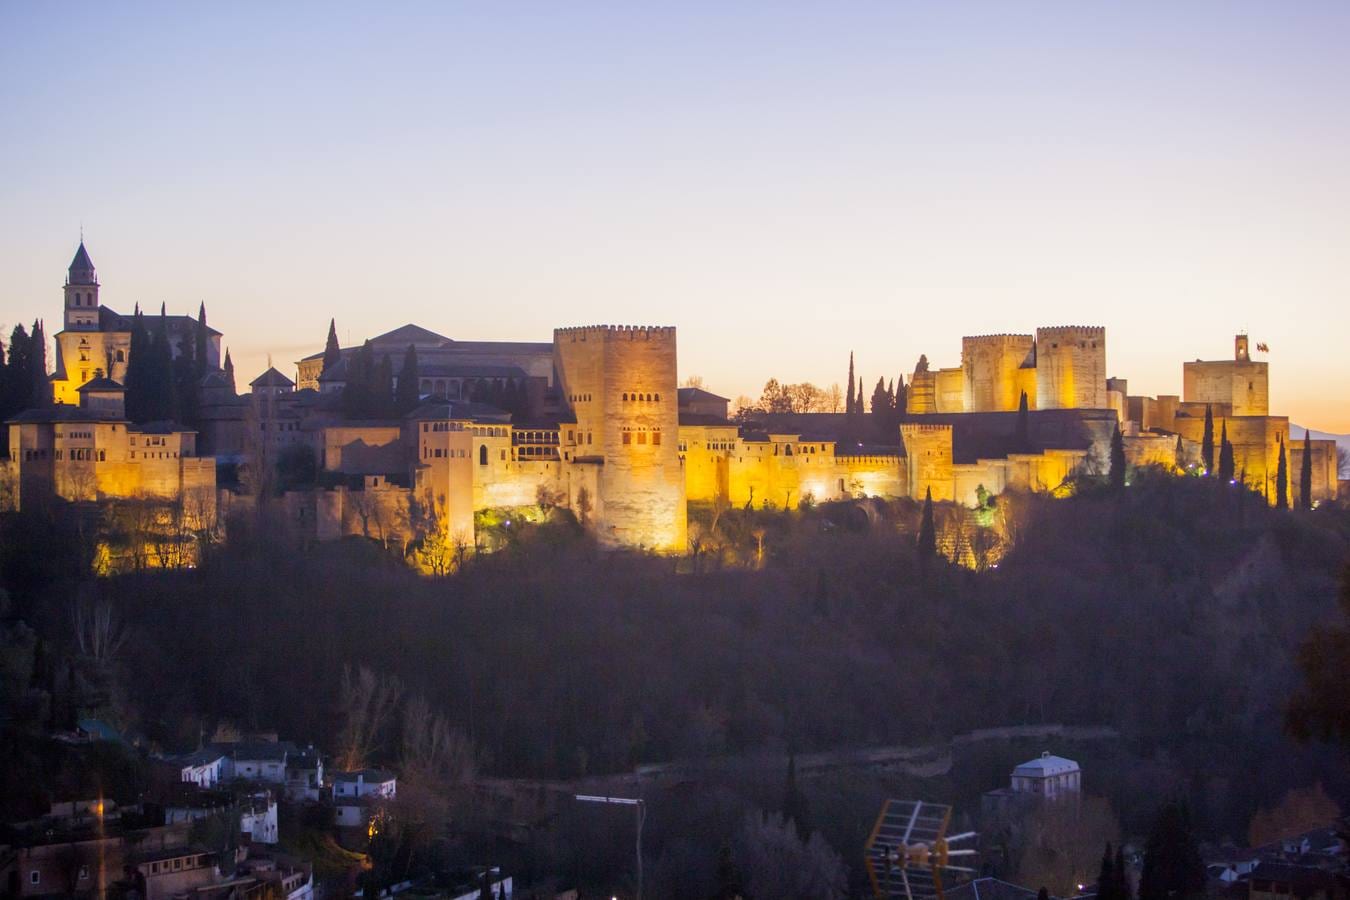 Alhambra (Granada). 2,7 millones de visitantes al año